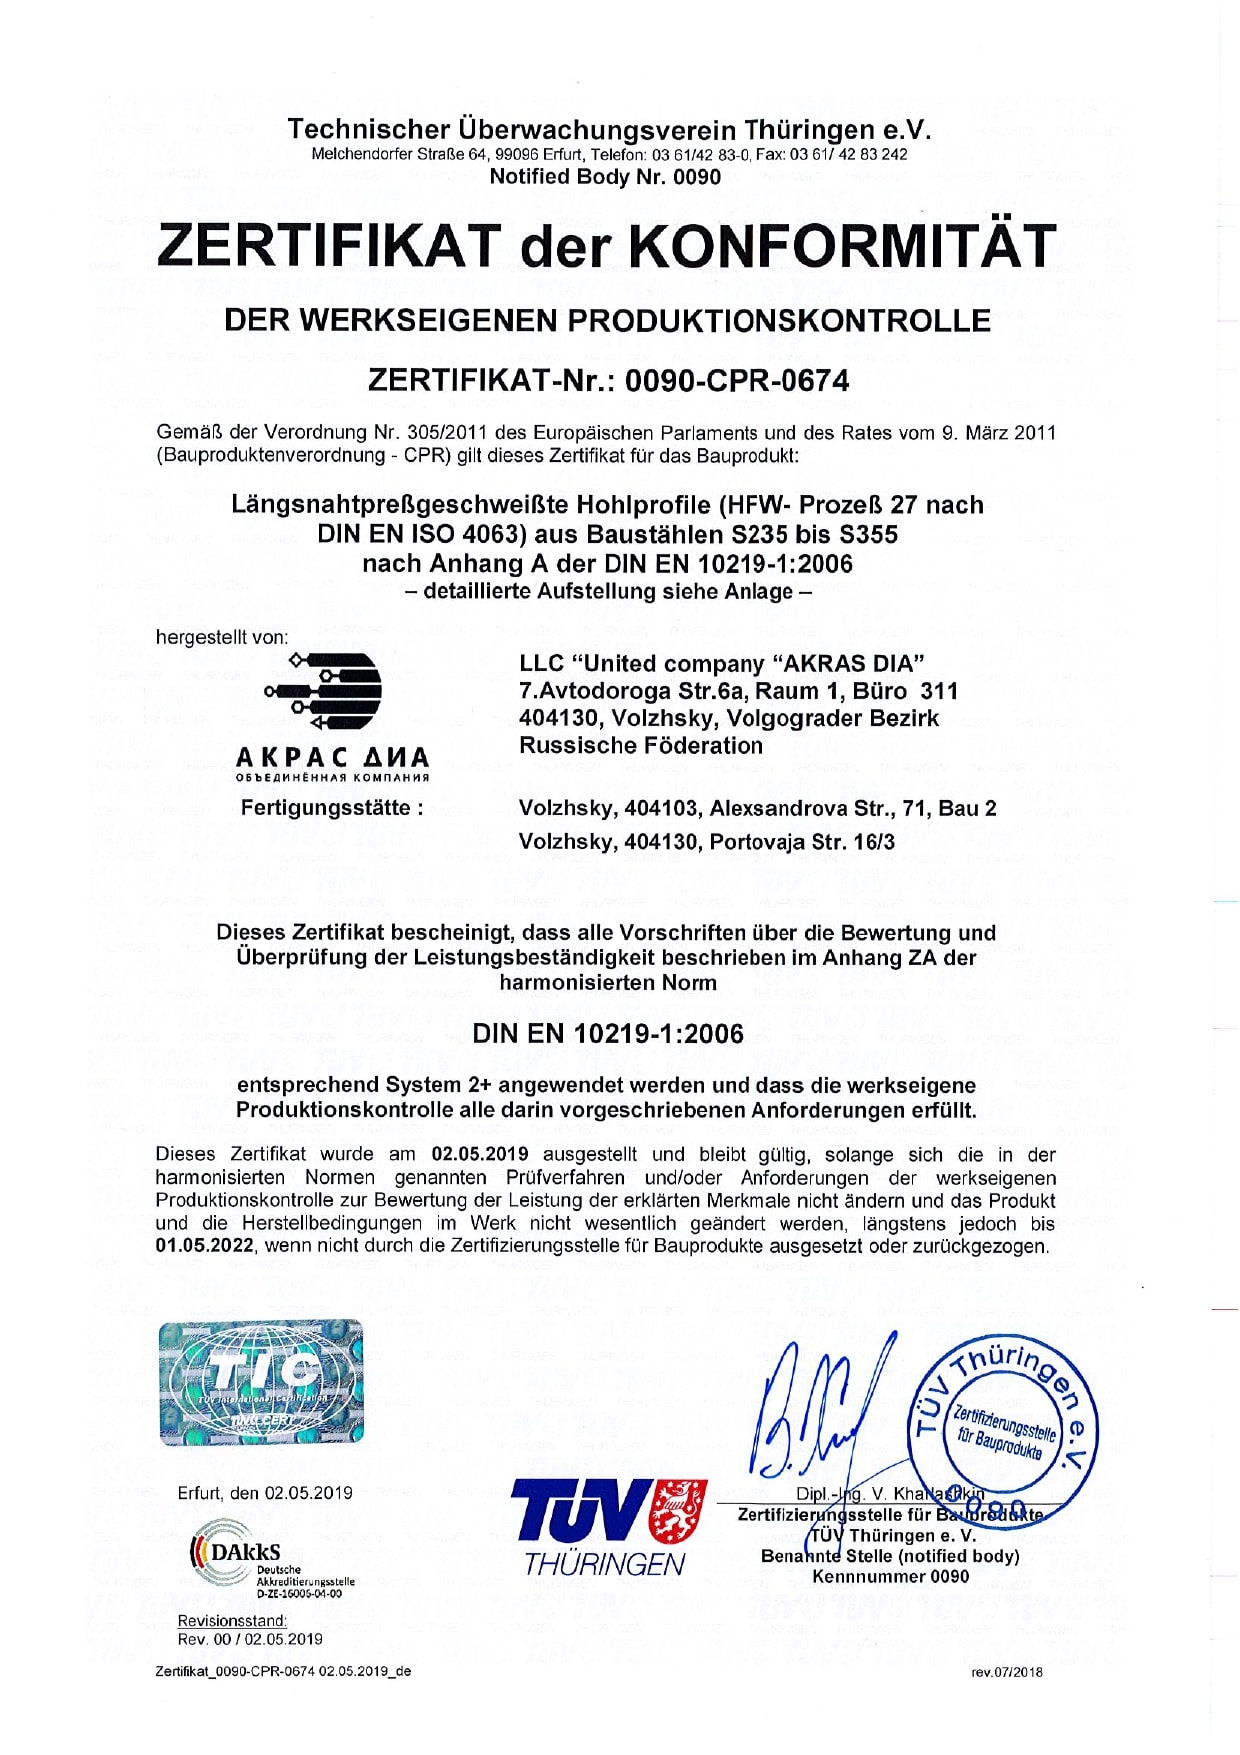 Сертификат соответствия внутреннего производственного контроля № 0090-CPR-0674 (de)